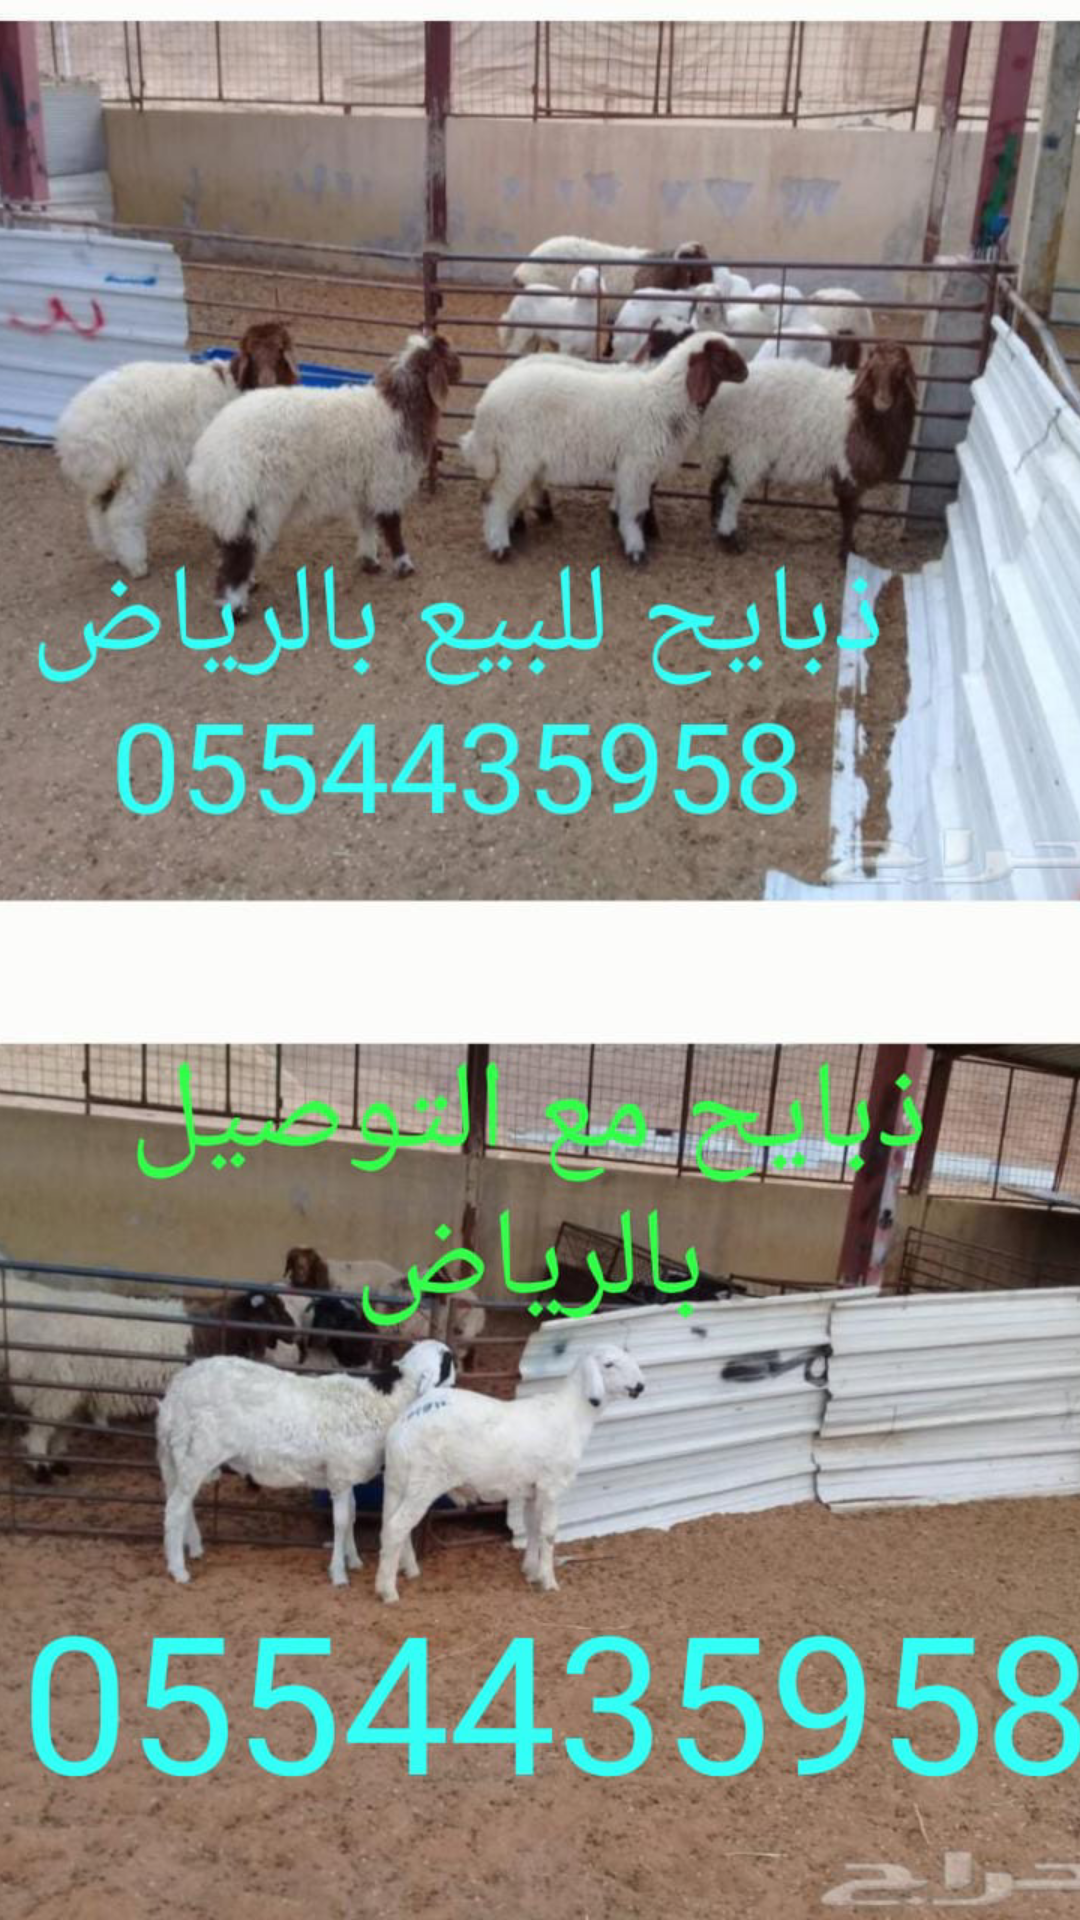 ابو فهد 0554435958 ذبايح للمناسبات للبيع في الرياض،محلات ذبايح في الرياض P_1212myezc1